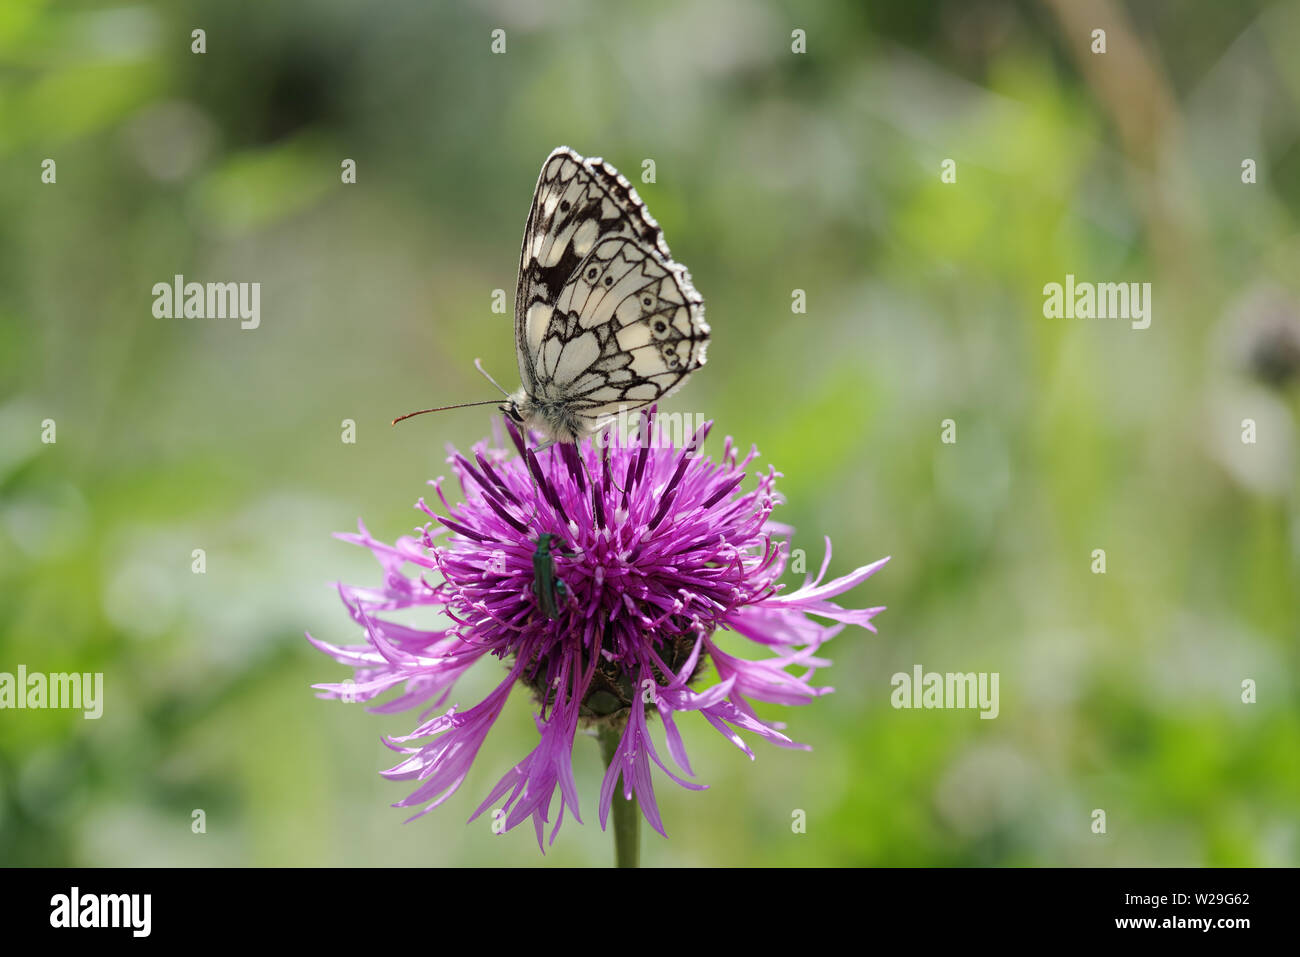 In marmo bianco e butterfly thick-gambe coleottero di fiori in appoggio su di un fiore di fiordaliso in South Downs National Park - Sussex, Regno Unito Foto Stock